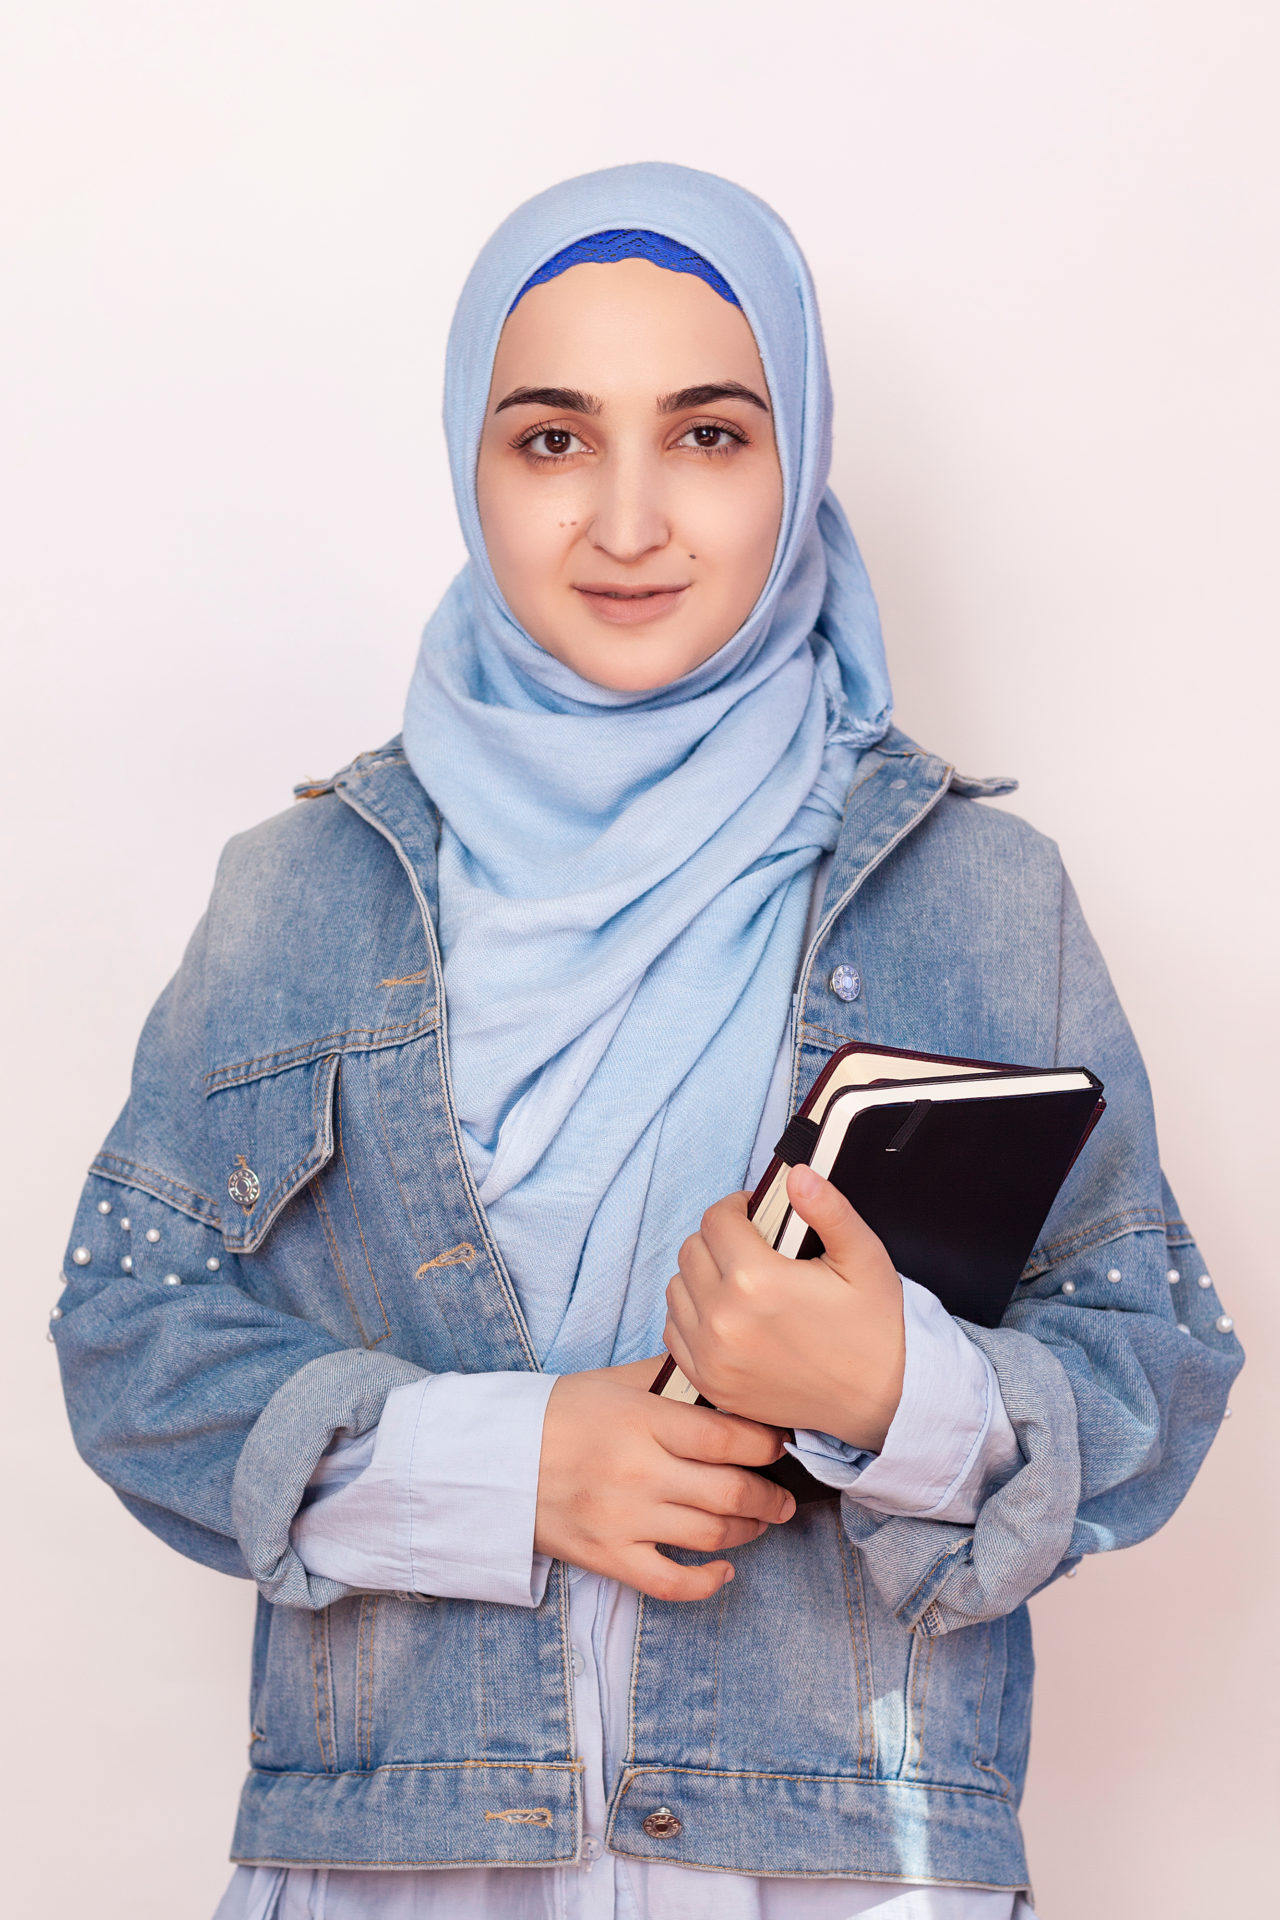 U.S. to Defend Muslim Girl Wearing Scarf in School